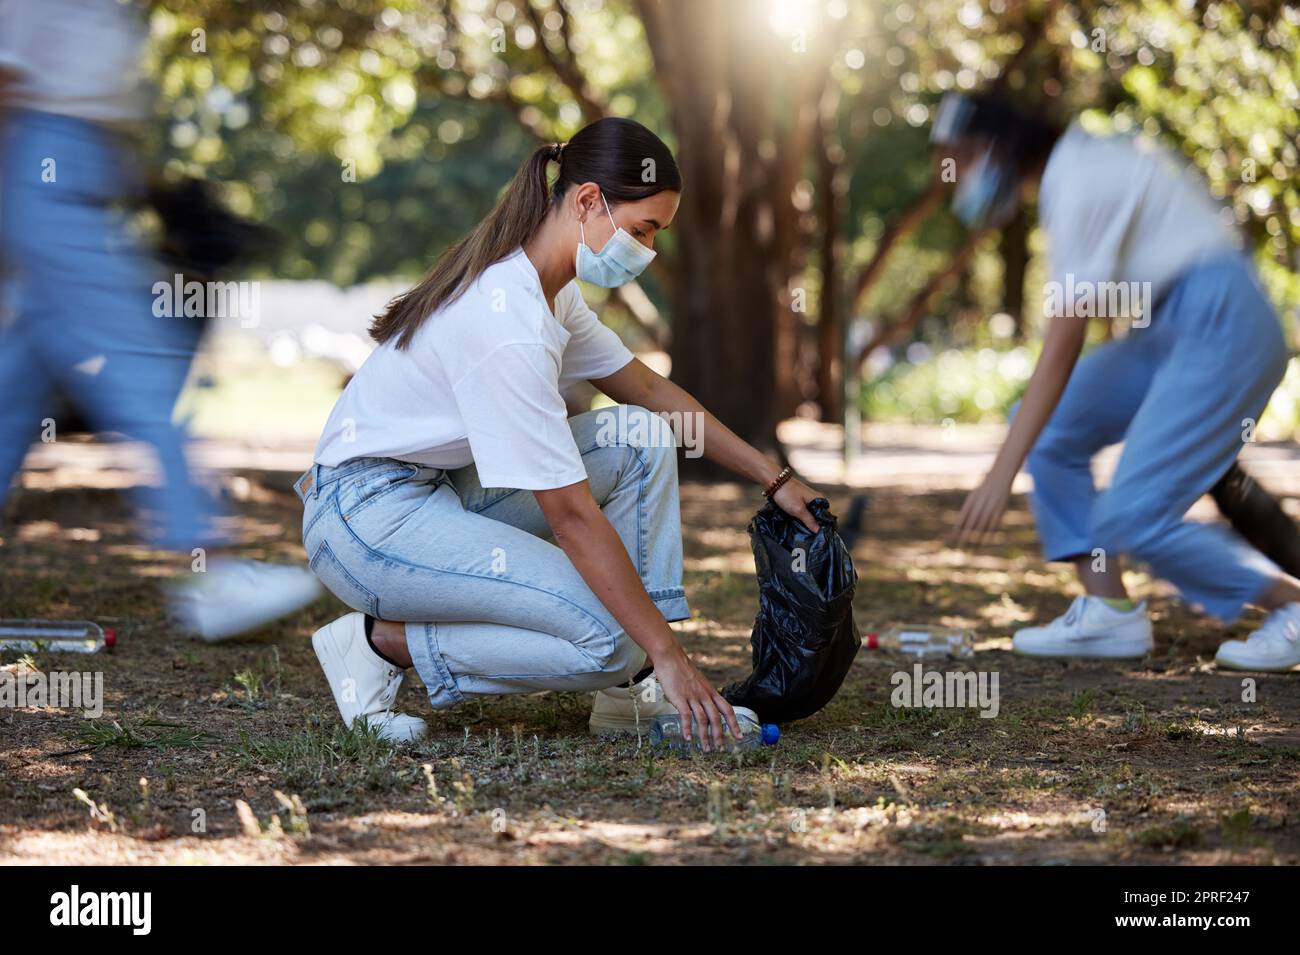 Sammeln Sie Müll, Schmutz und Müll im Freien in einem Park während der Fahrt. Ein junges Team weiblicher NRO-Aktivisten reinigt die Umwelt während der Pandemie covid19 Stockfoto